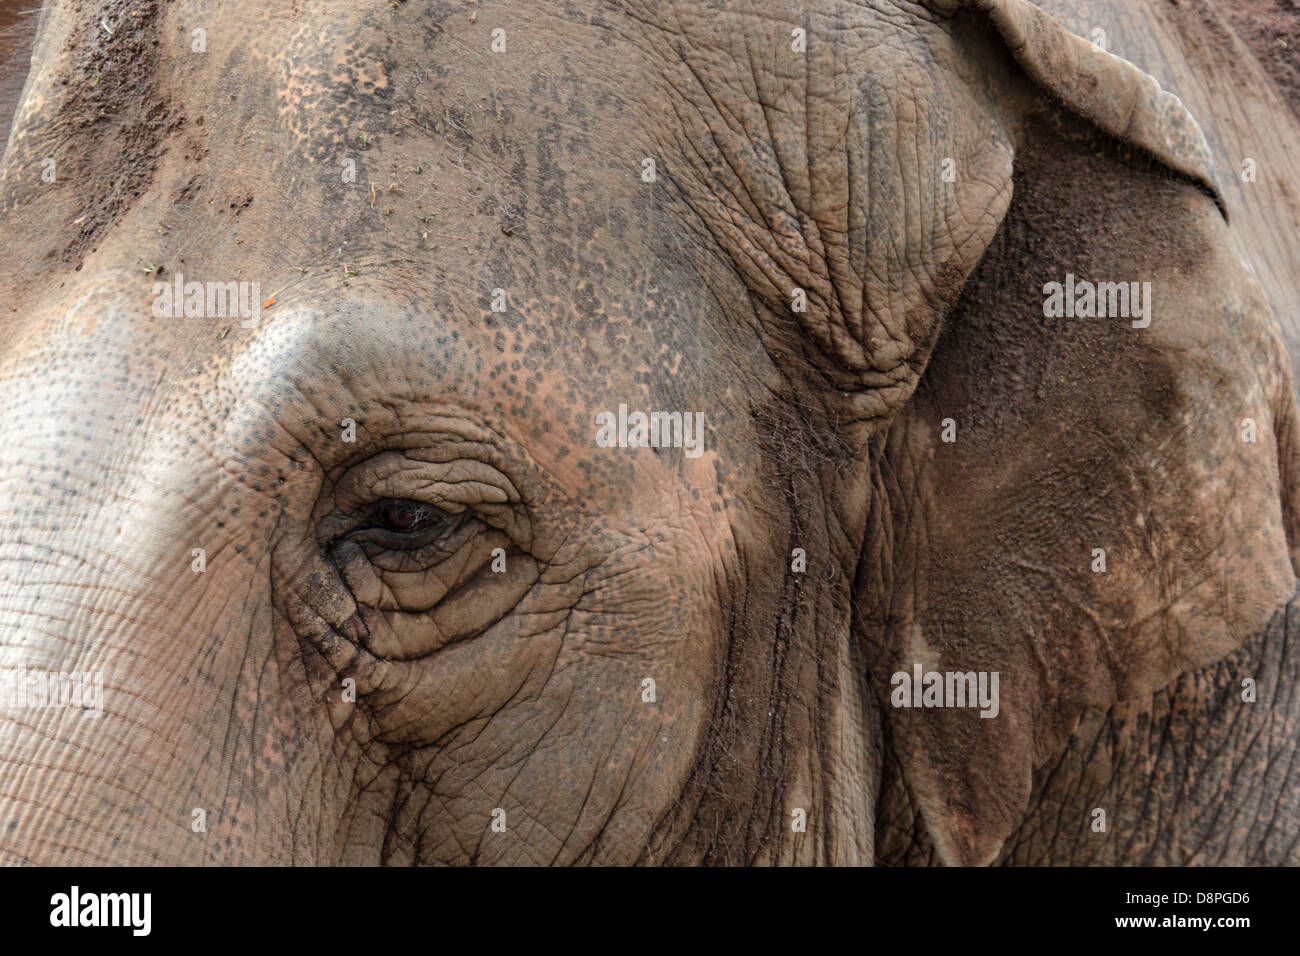 Nahaufnahme von Auge und Ohr eines asiatischen Elefanten, die faltige Haut ist von Schlamm bedeckt. Stockfoto